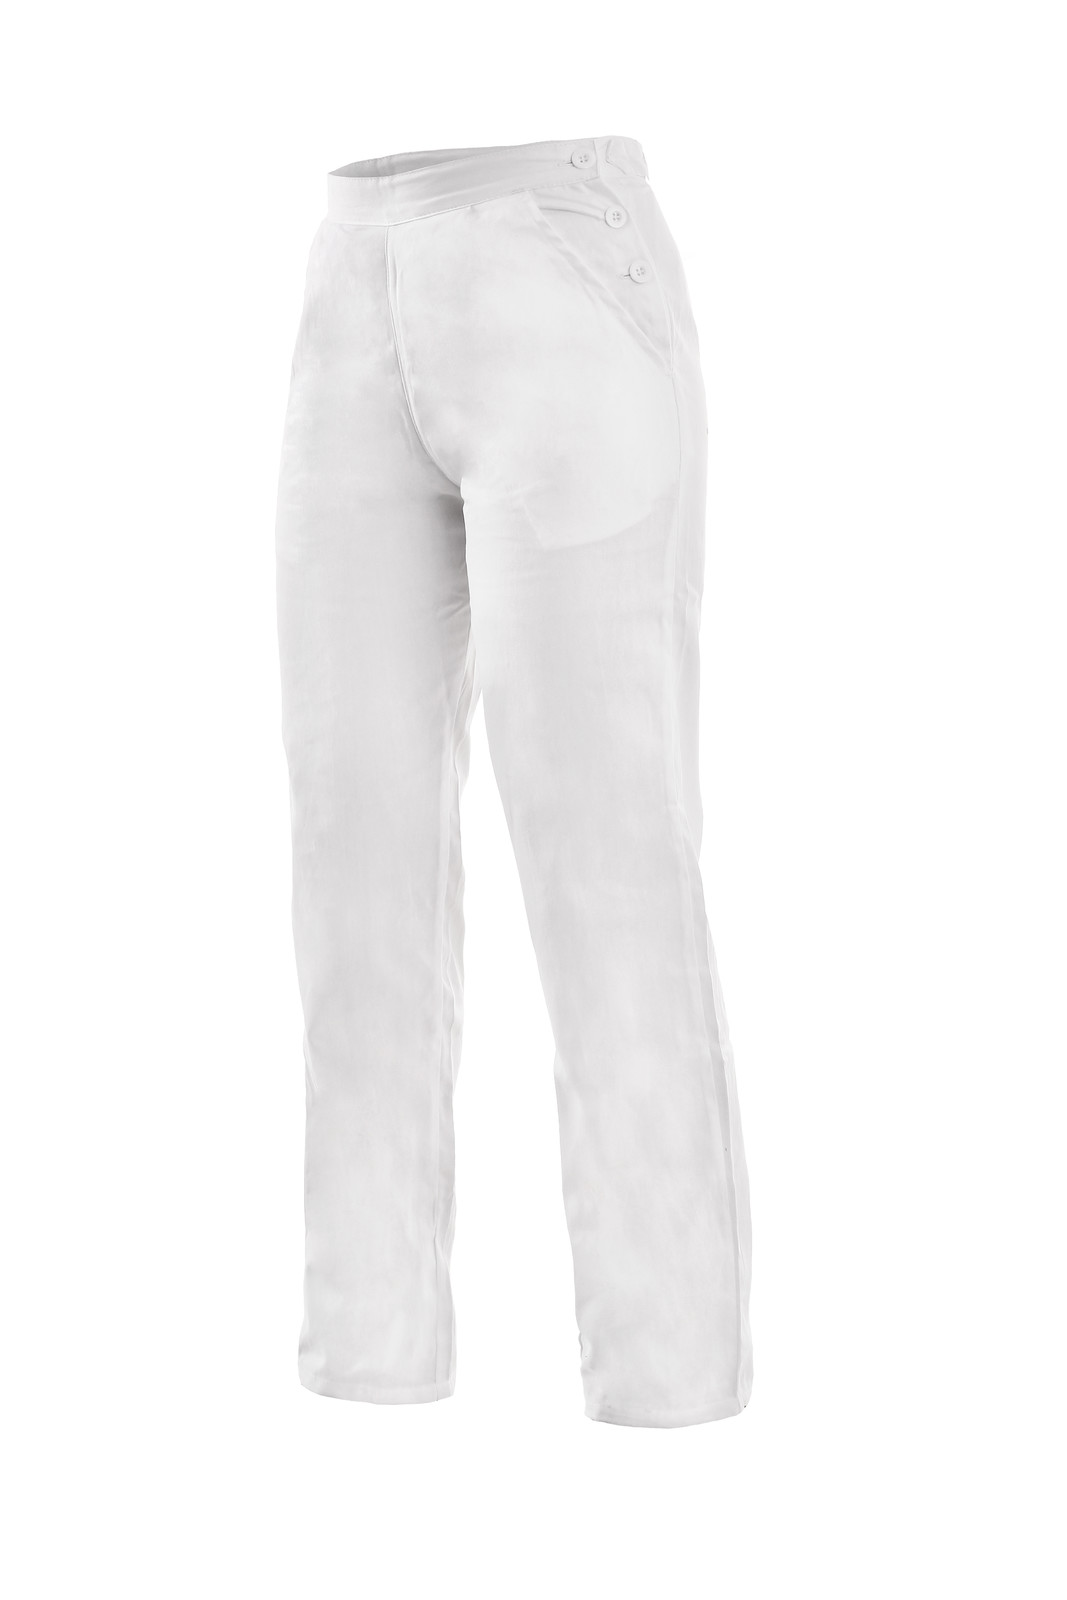 Dámske biele bavlnené nohavice Darja - veľkosť: 58, farba: biela